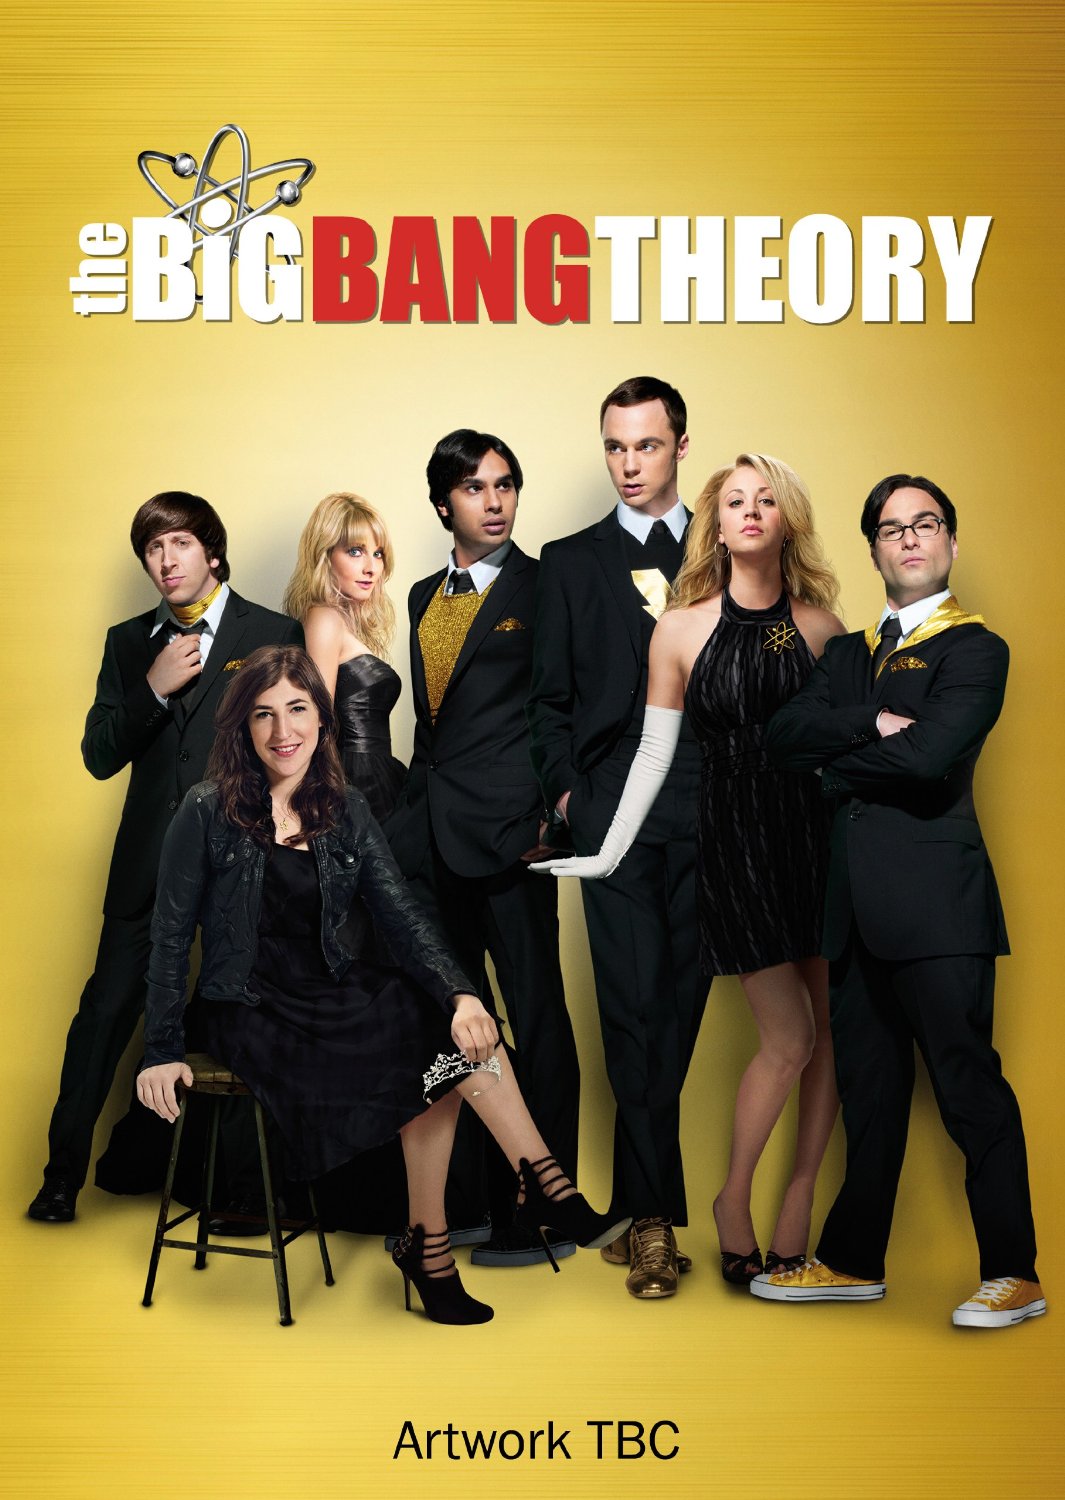 The Big Bang Theory - Season 7